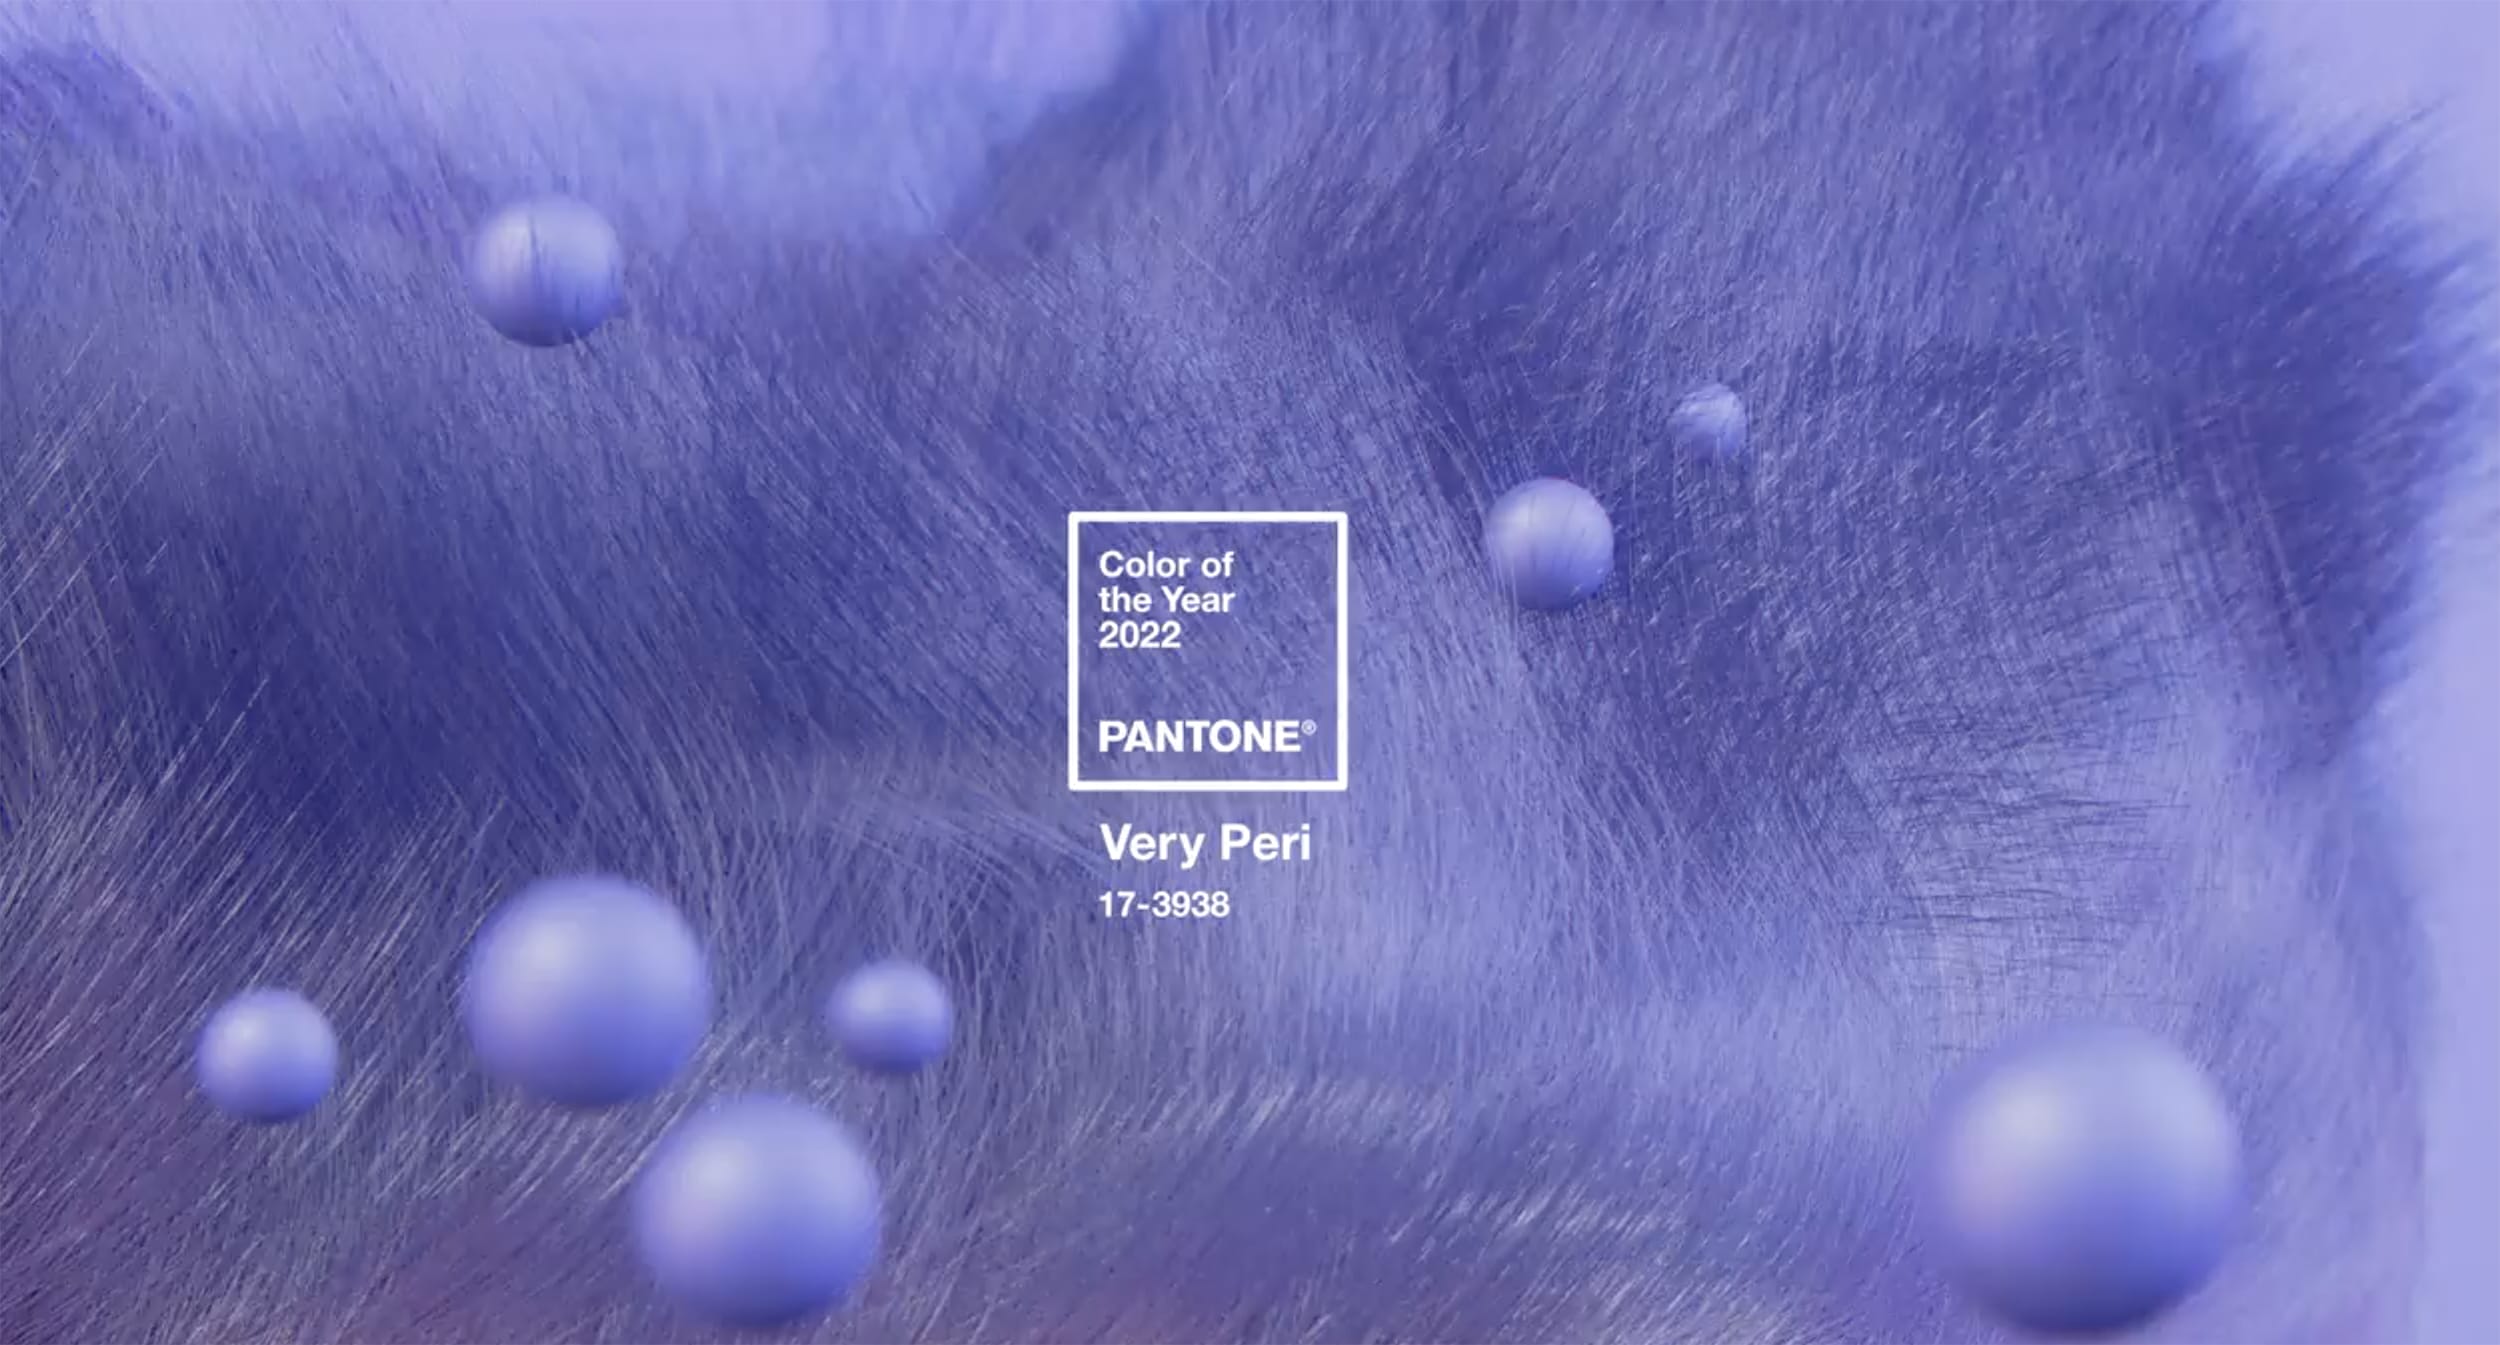 A Pantone Intézet szerint 2022 színe a Very Peri, póriasabb nevén liláskék